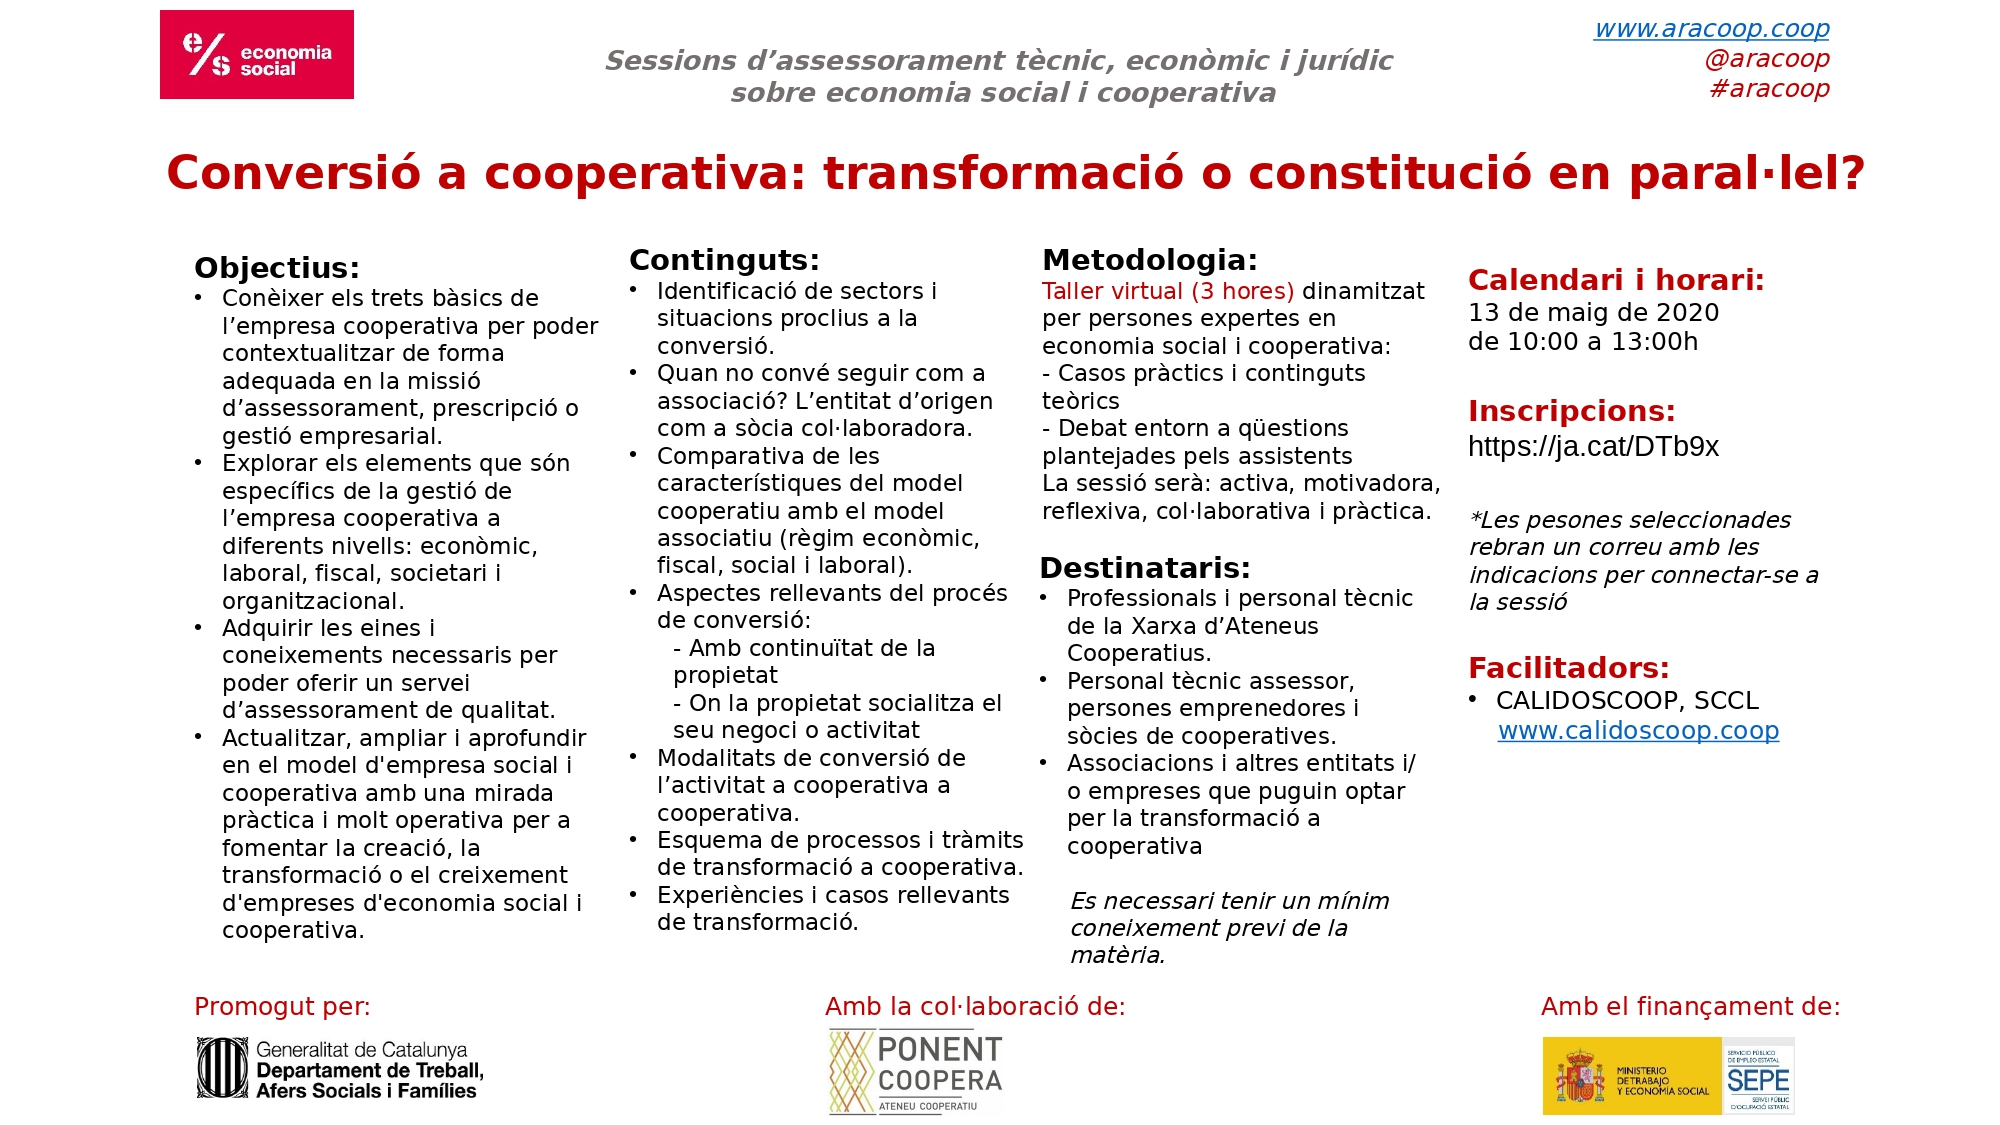 ONLINE - Conversió a cooperativa: transformació o constitució en paralꞏlel?